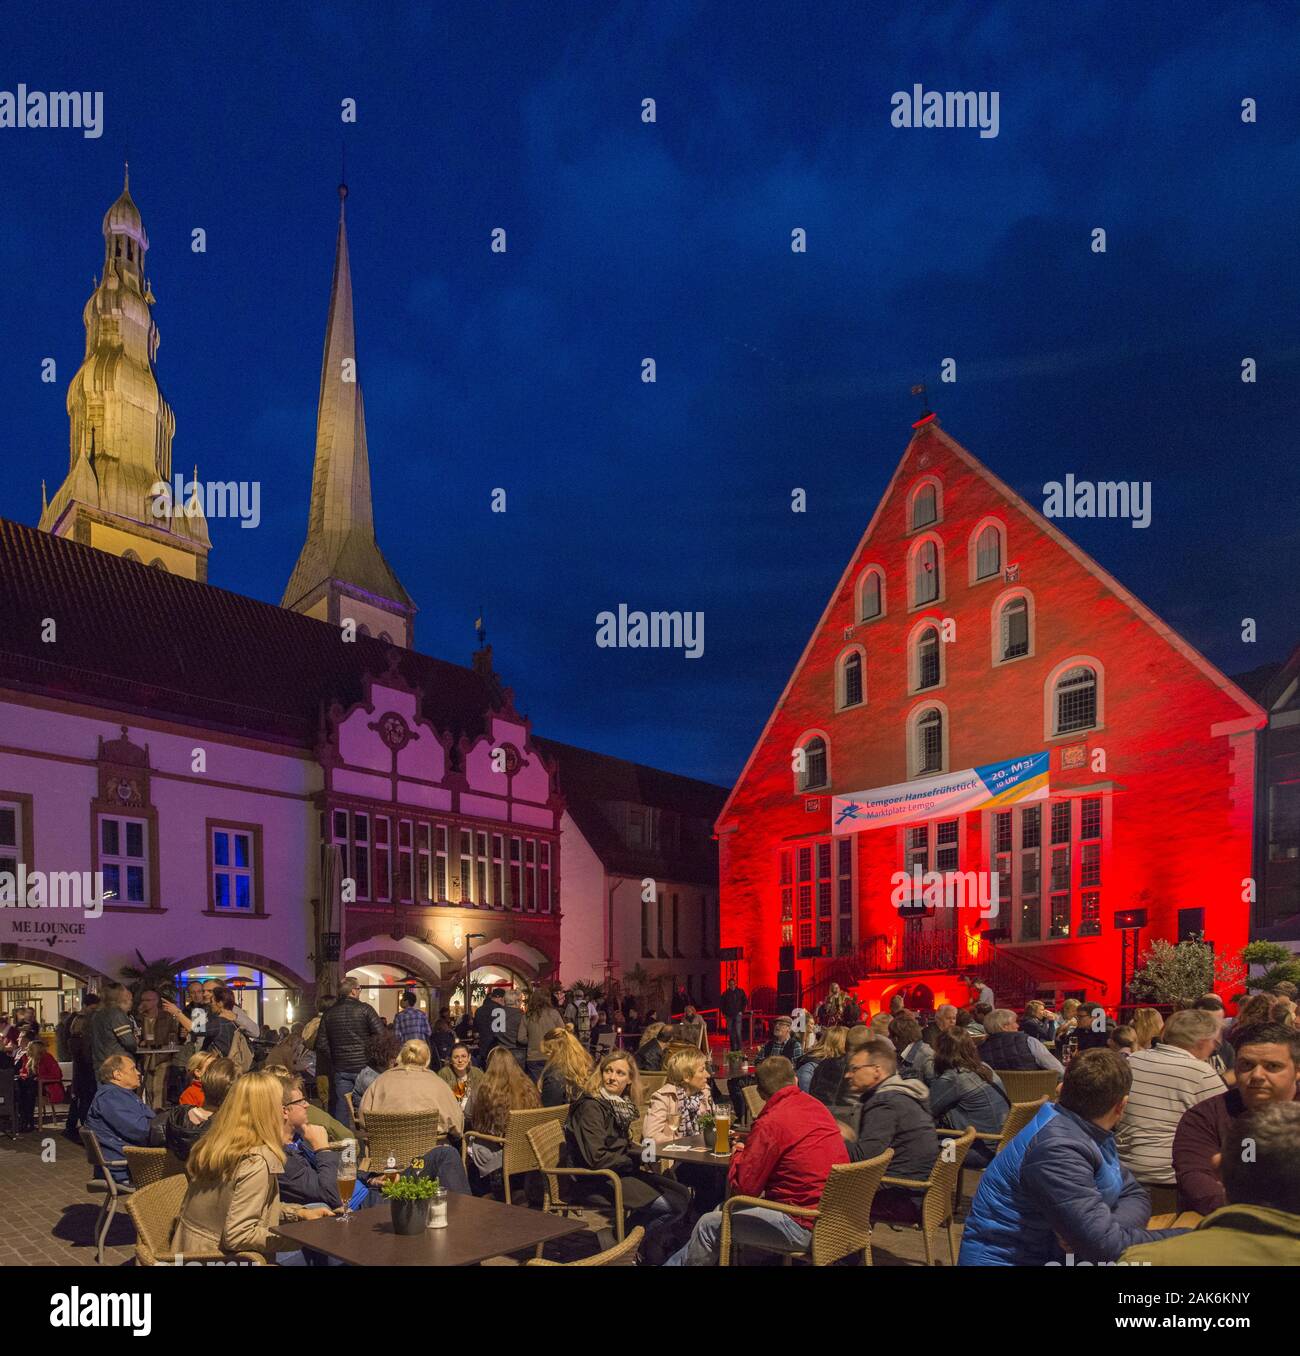 Lemgo: Marktplatz mit illuminiertem Rathaus (l.) und Ballhaus (r.), im Hintergrund die Tuerme der St.-Nicolai-Kirche, Teutoburger Wald | usage worldwi Stock Photo